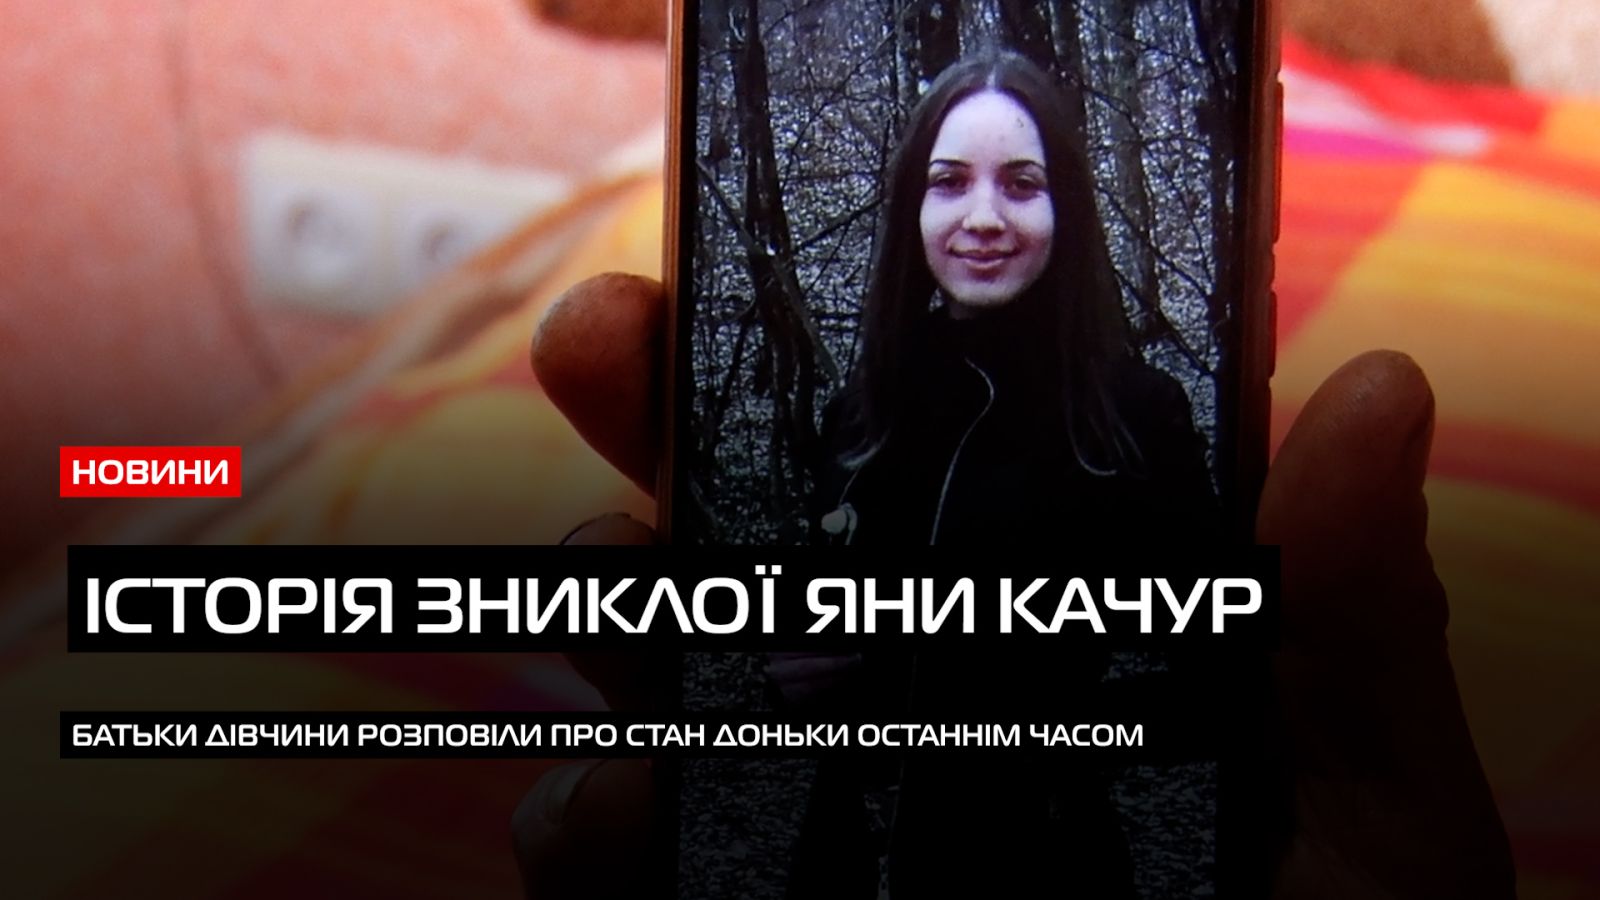  Пішла з дому і не повернулася: з 25 грудня в Мукачеві шукають зниклу дівчину (ВІДЕО) 0